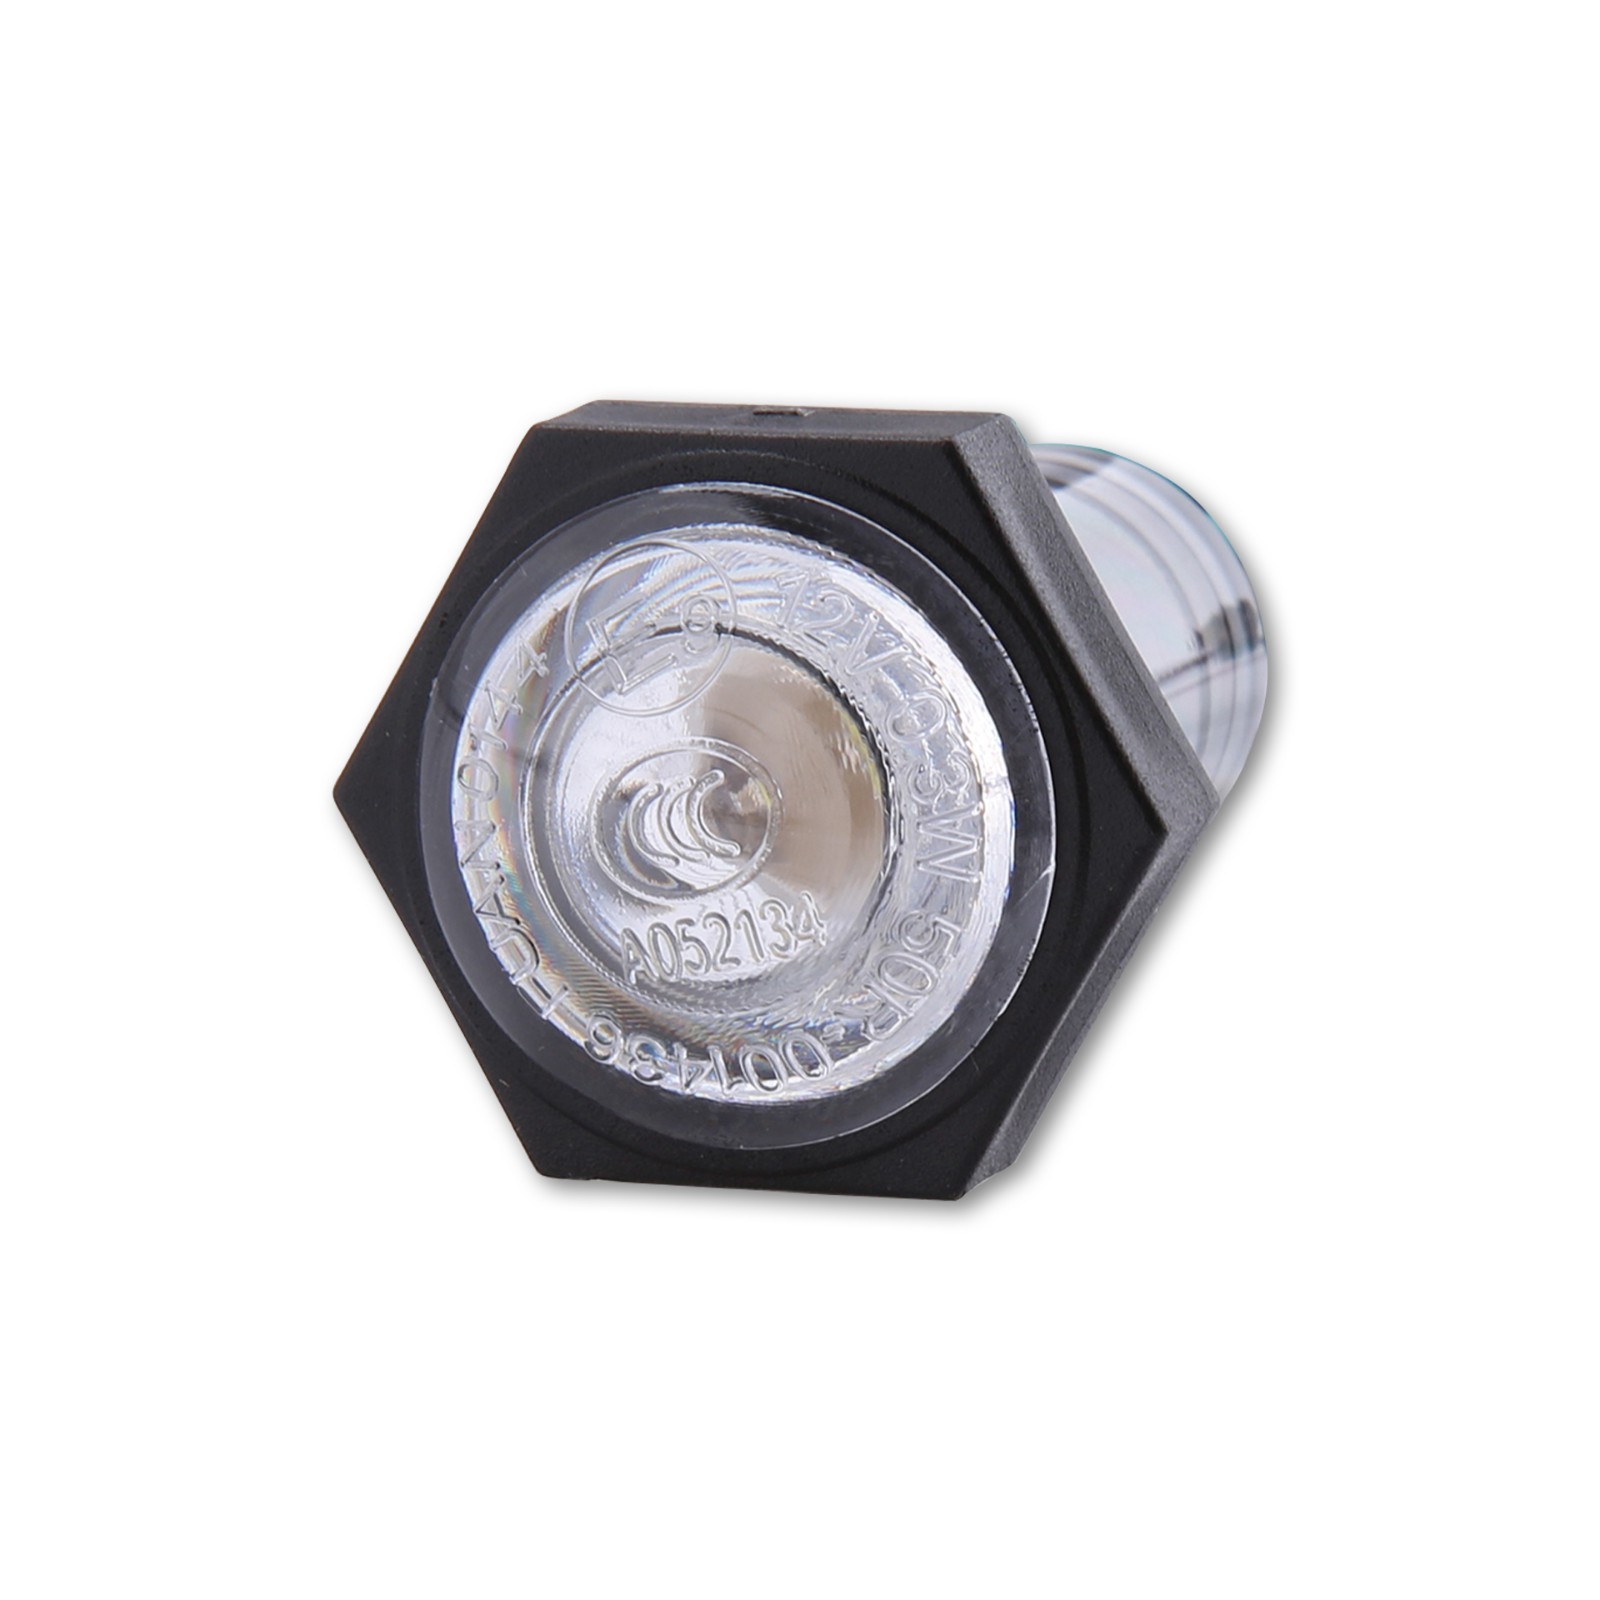 SHIN YO LED-Standlicht, rund, Durchmesser 24,7 mm, mit Universalhalter -  günstig kaufen ▷ FC-Moto